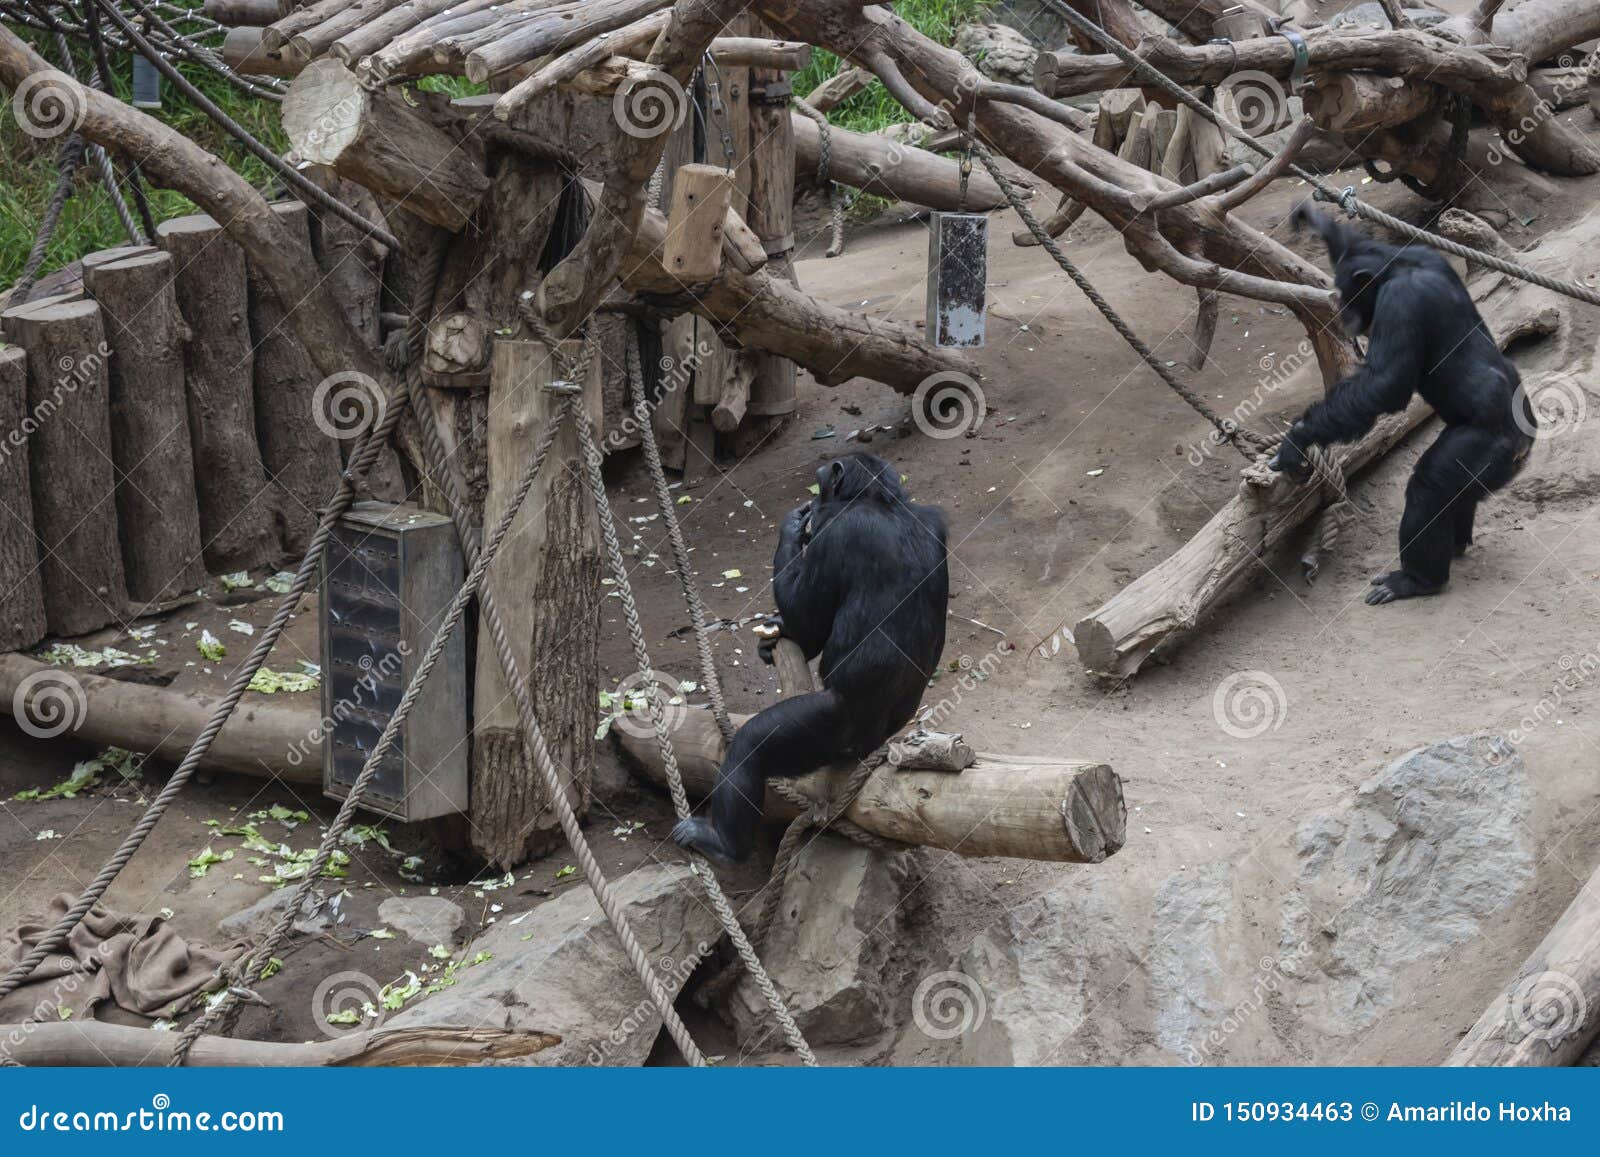 pygmy chimpanzees playing